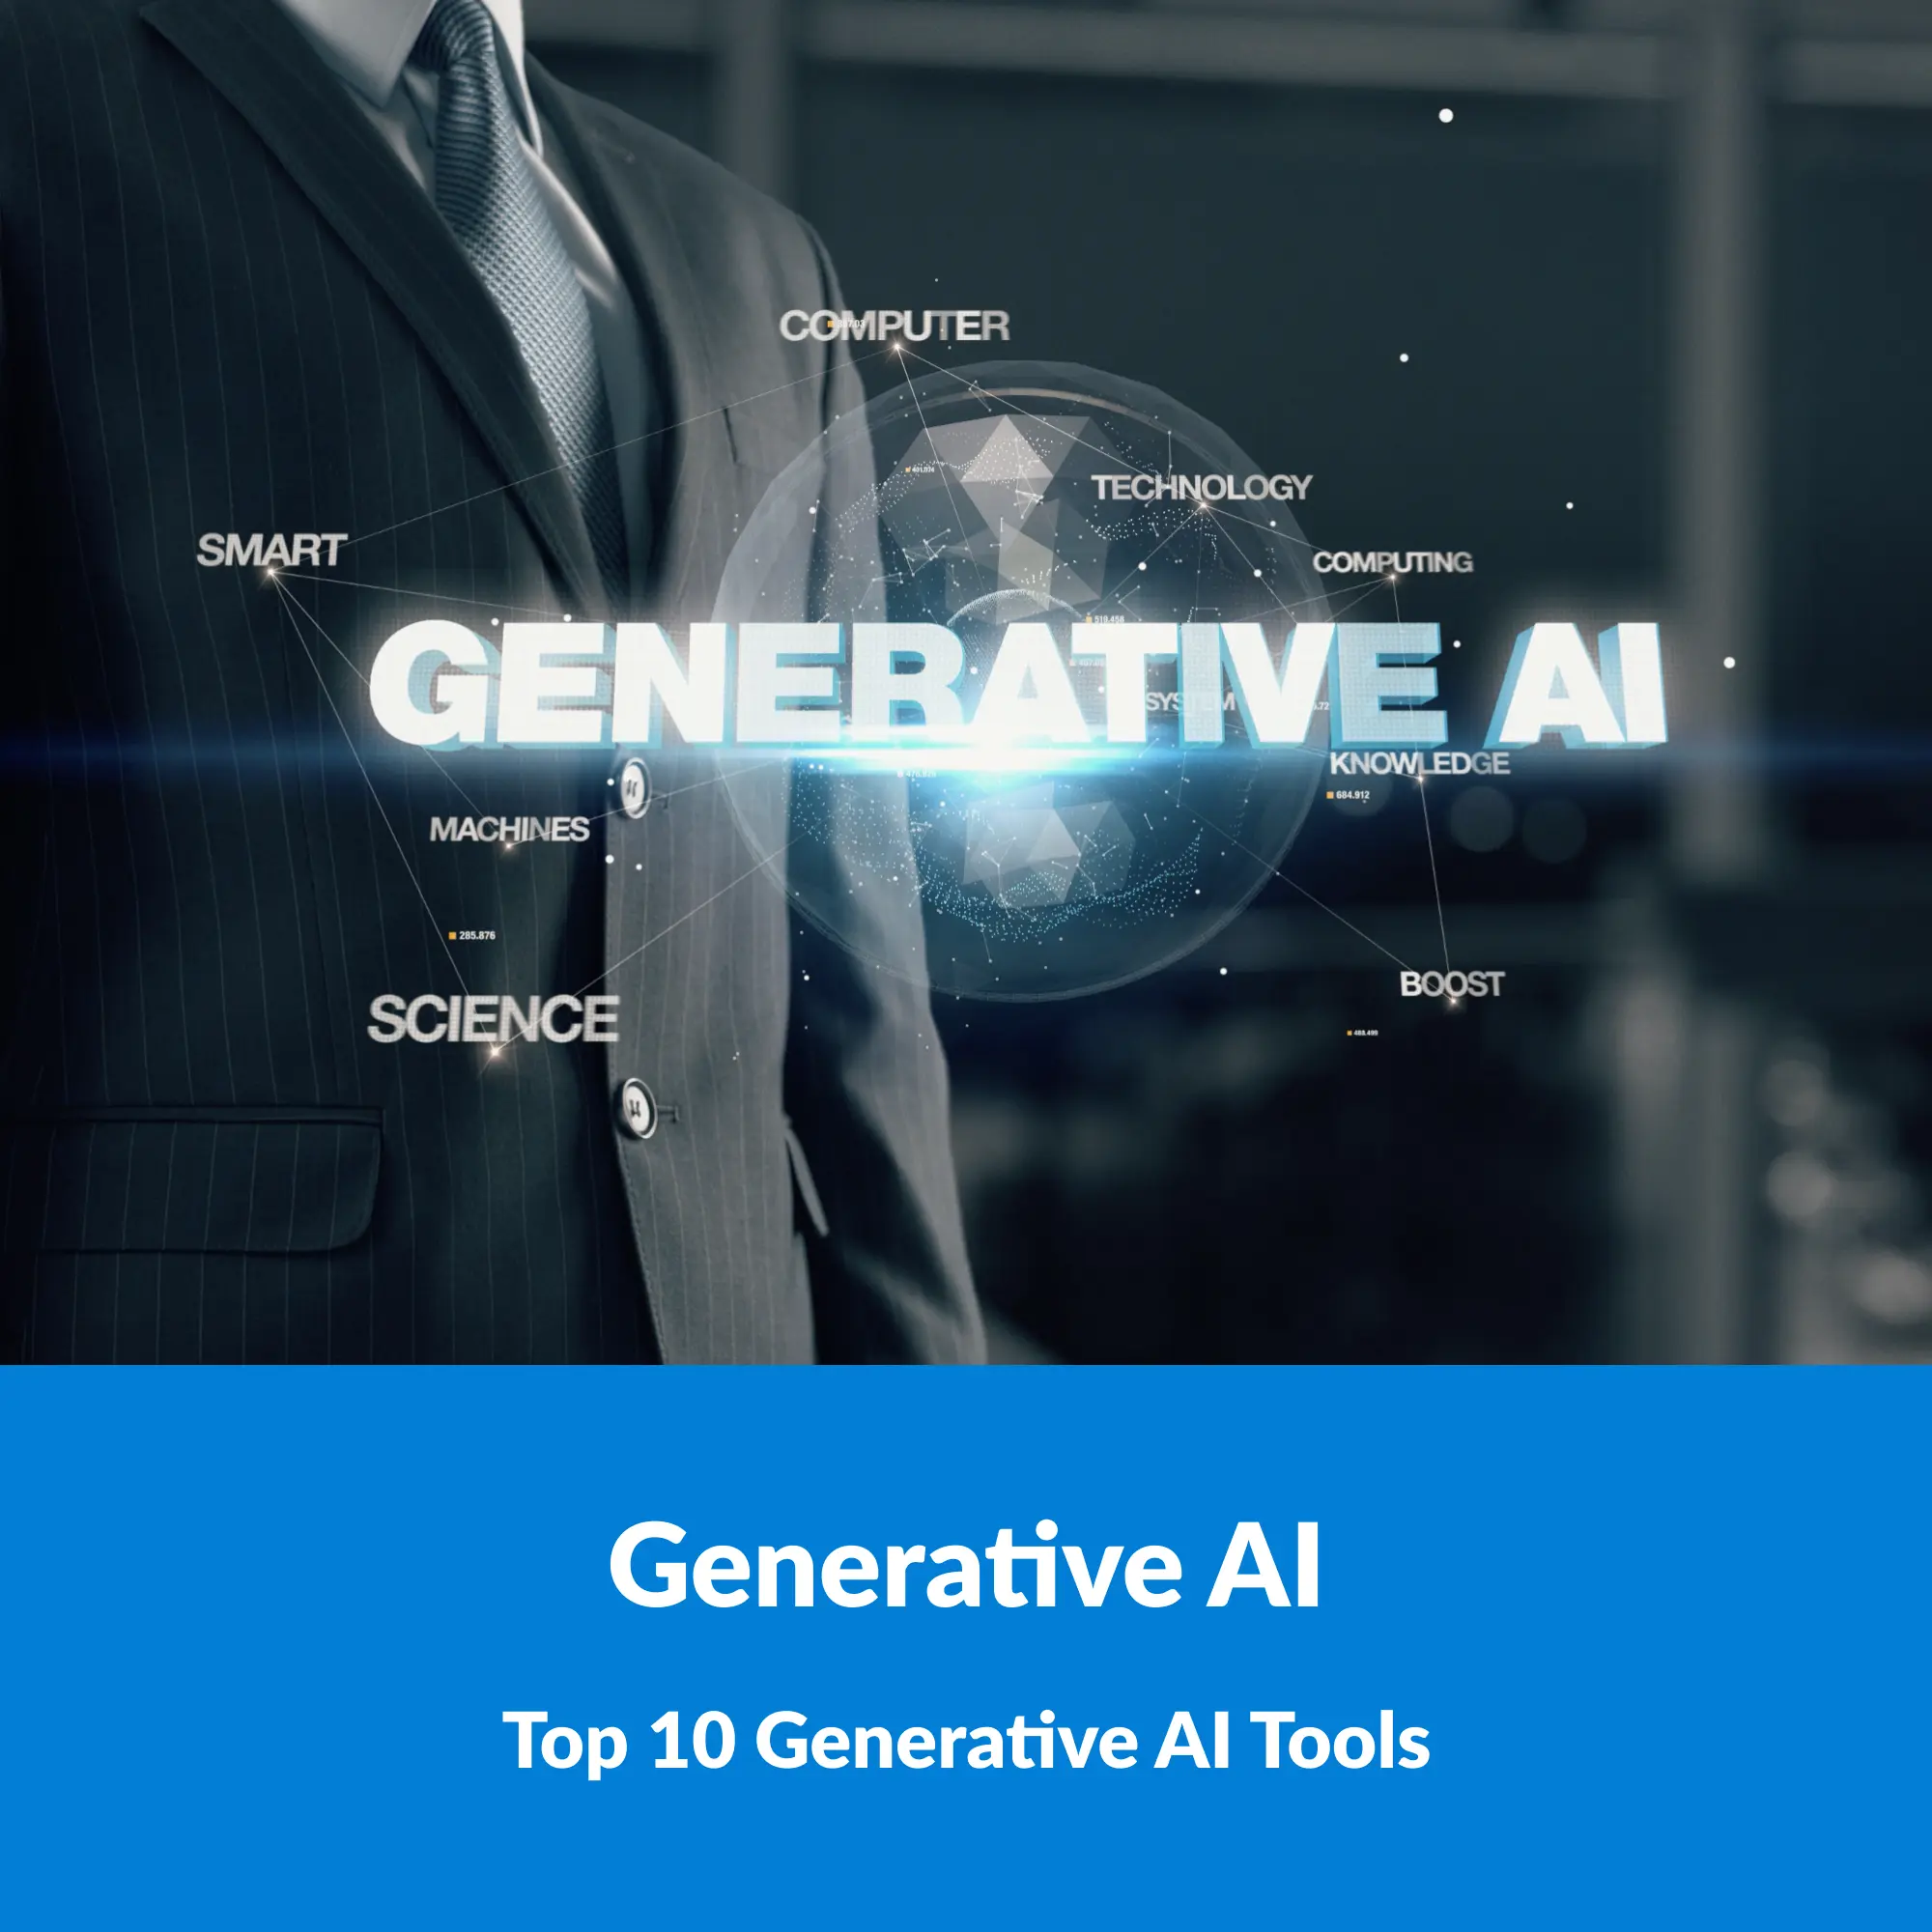 Top 10 Generative AI Tools